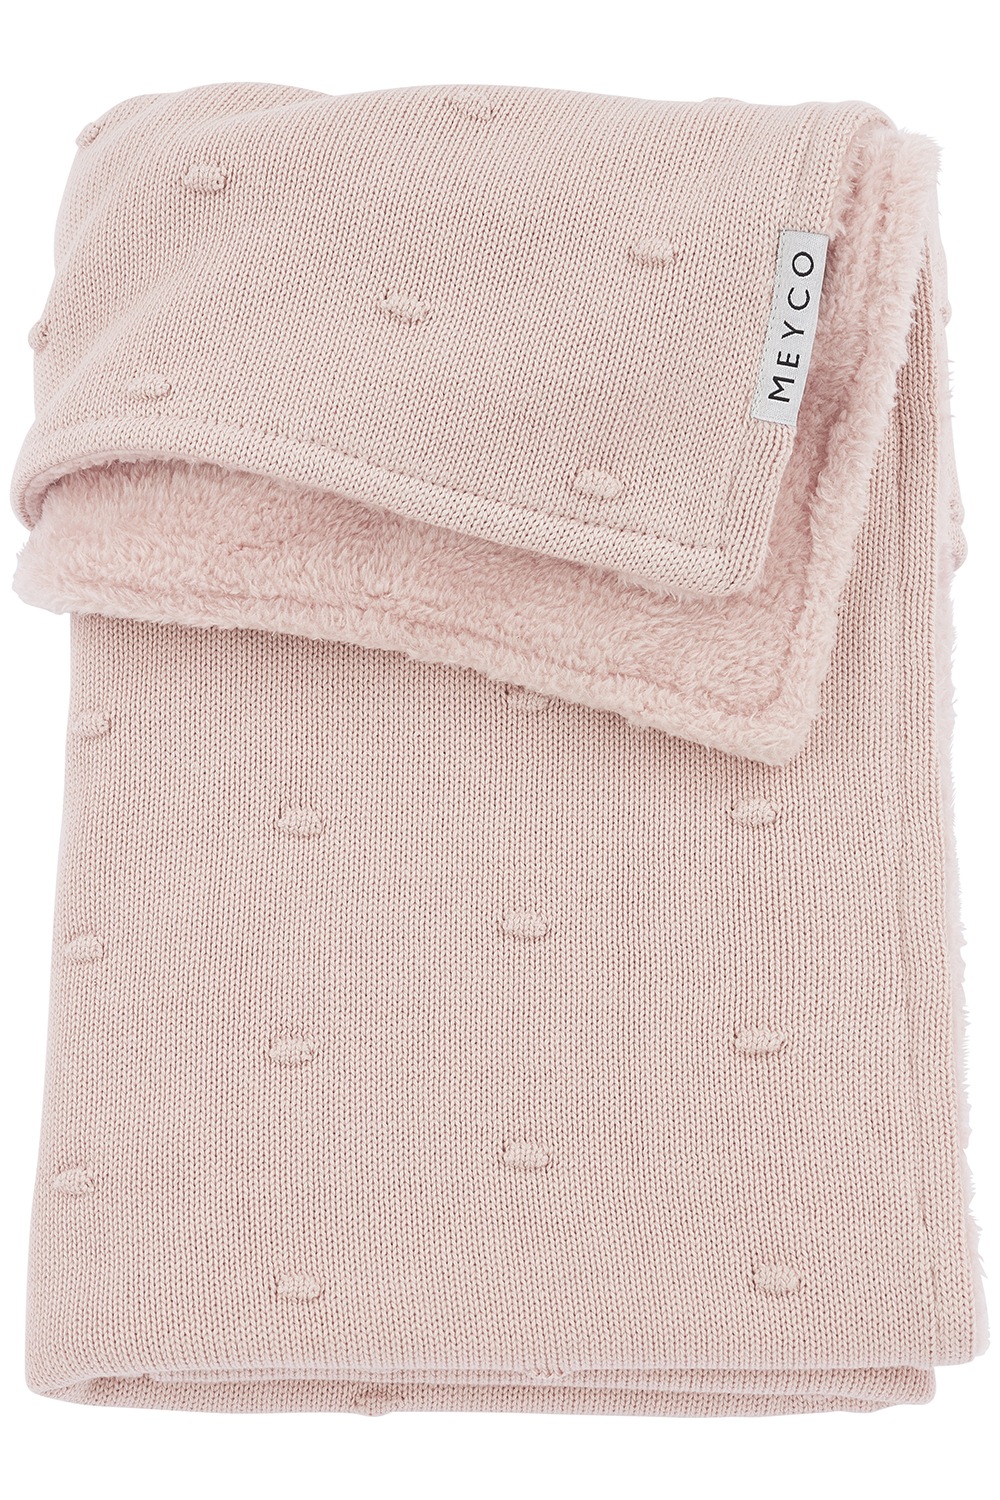 Ledikantdeken Mini Knots Teddy - Soft Pink - 100x150cm